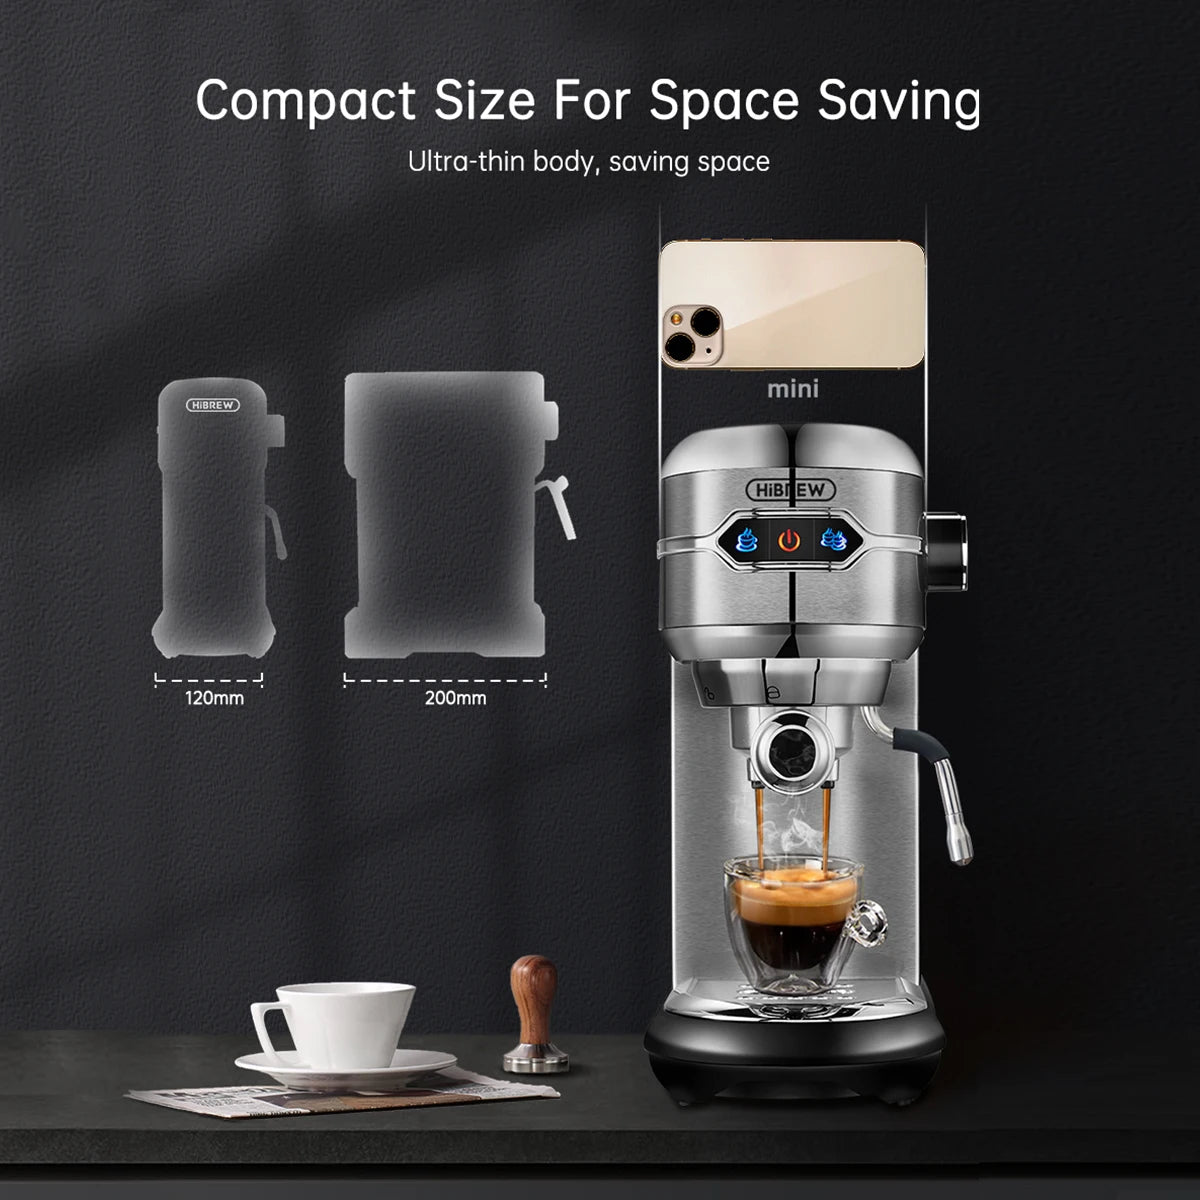 HiBREW H11 Slim Espresso Coffee Machine - easynow.com